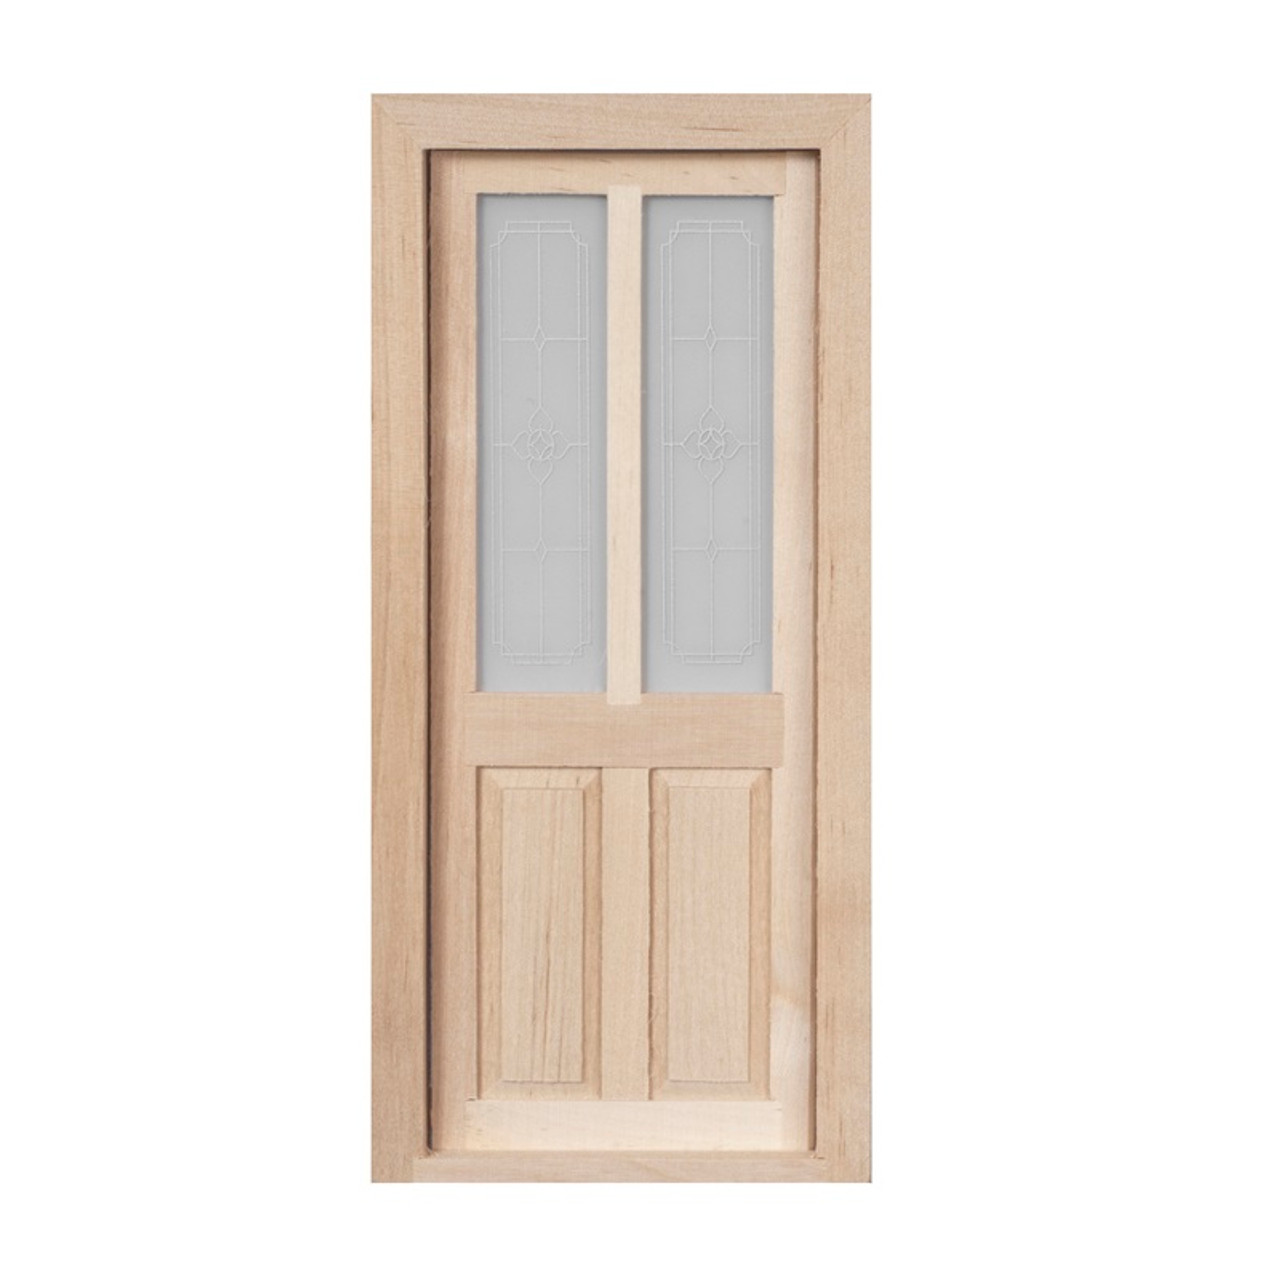 Split panel door with "leaded glass" upper